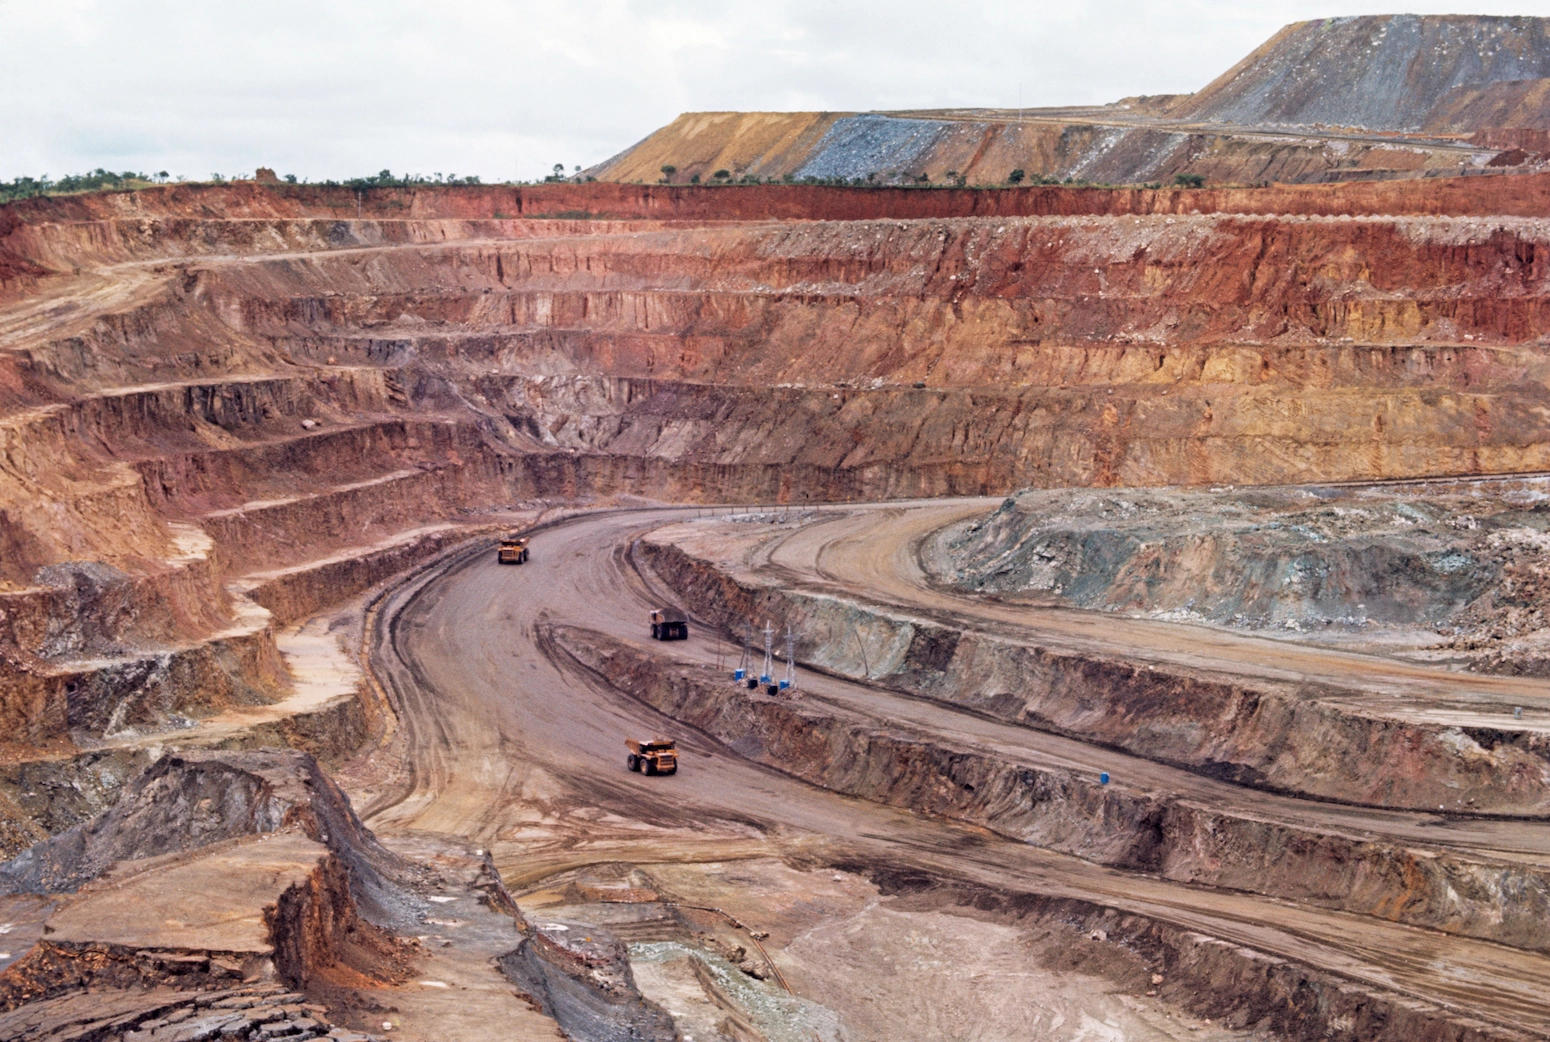 Open pit copper mine in the mineral-rich Shaba region of the Democratic Republic of Congo